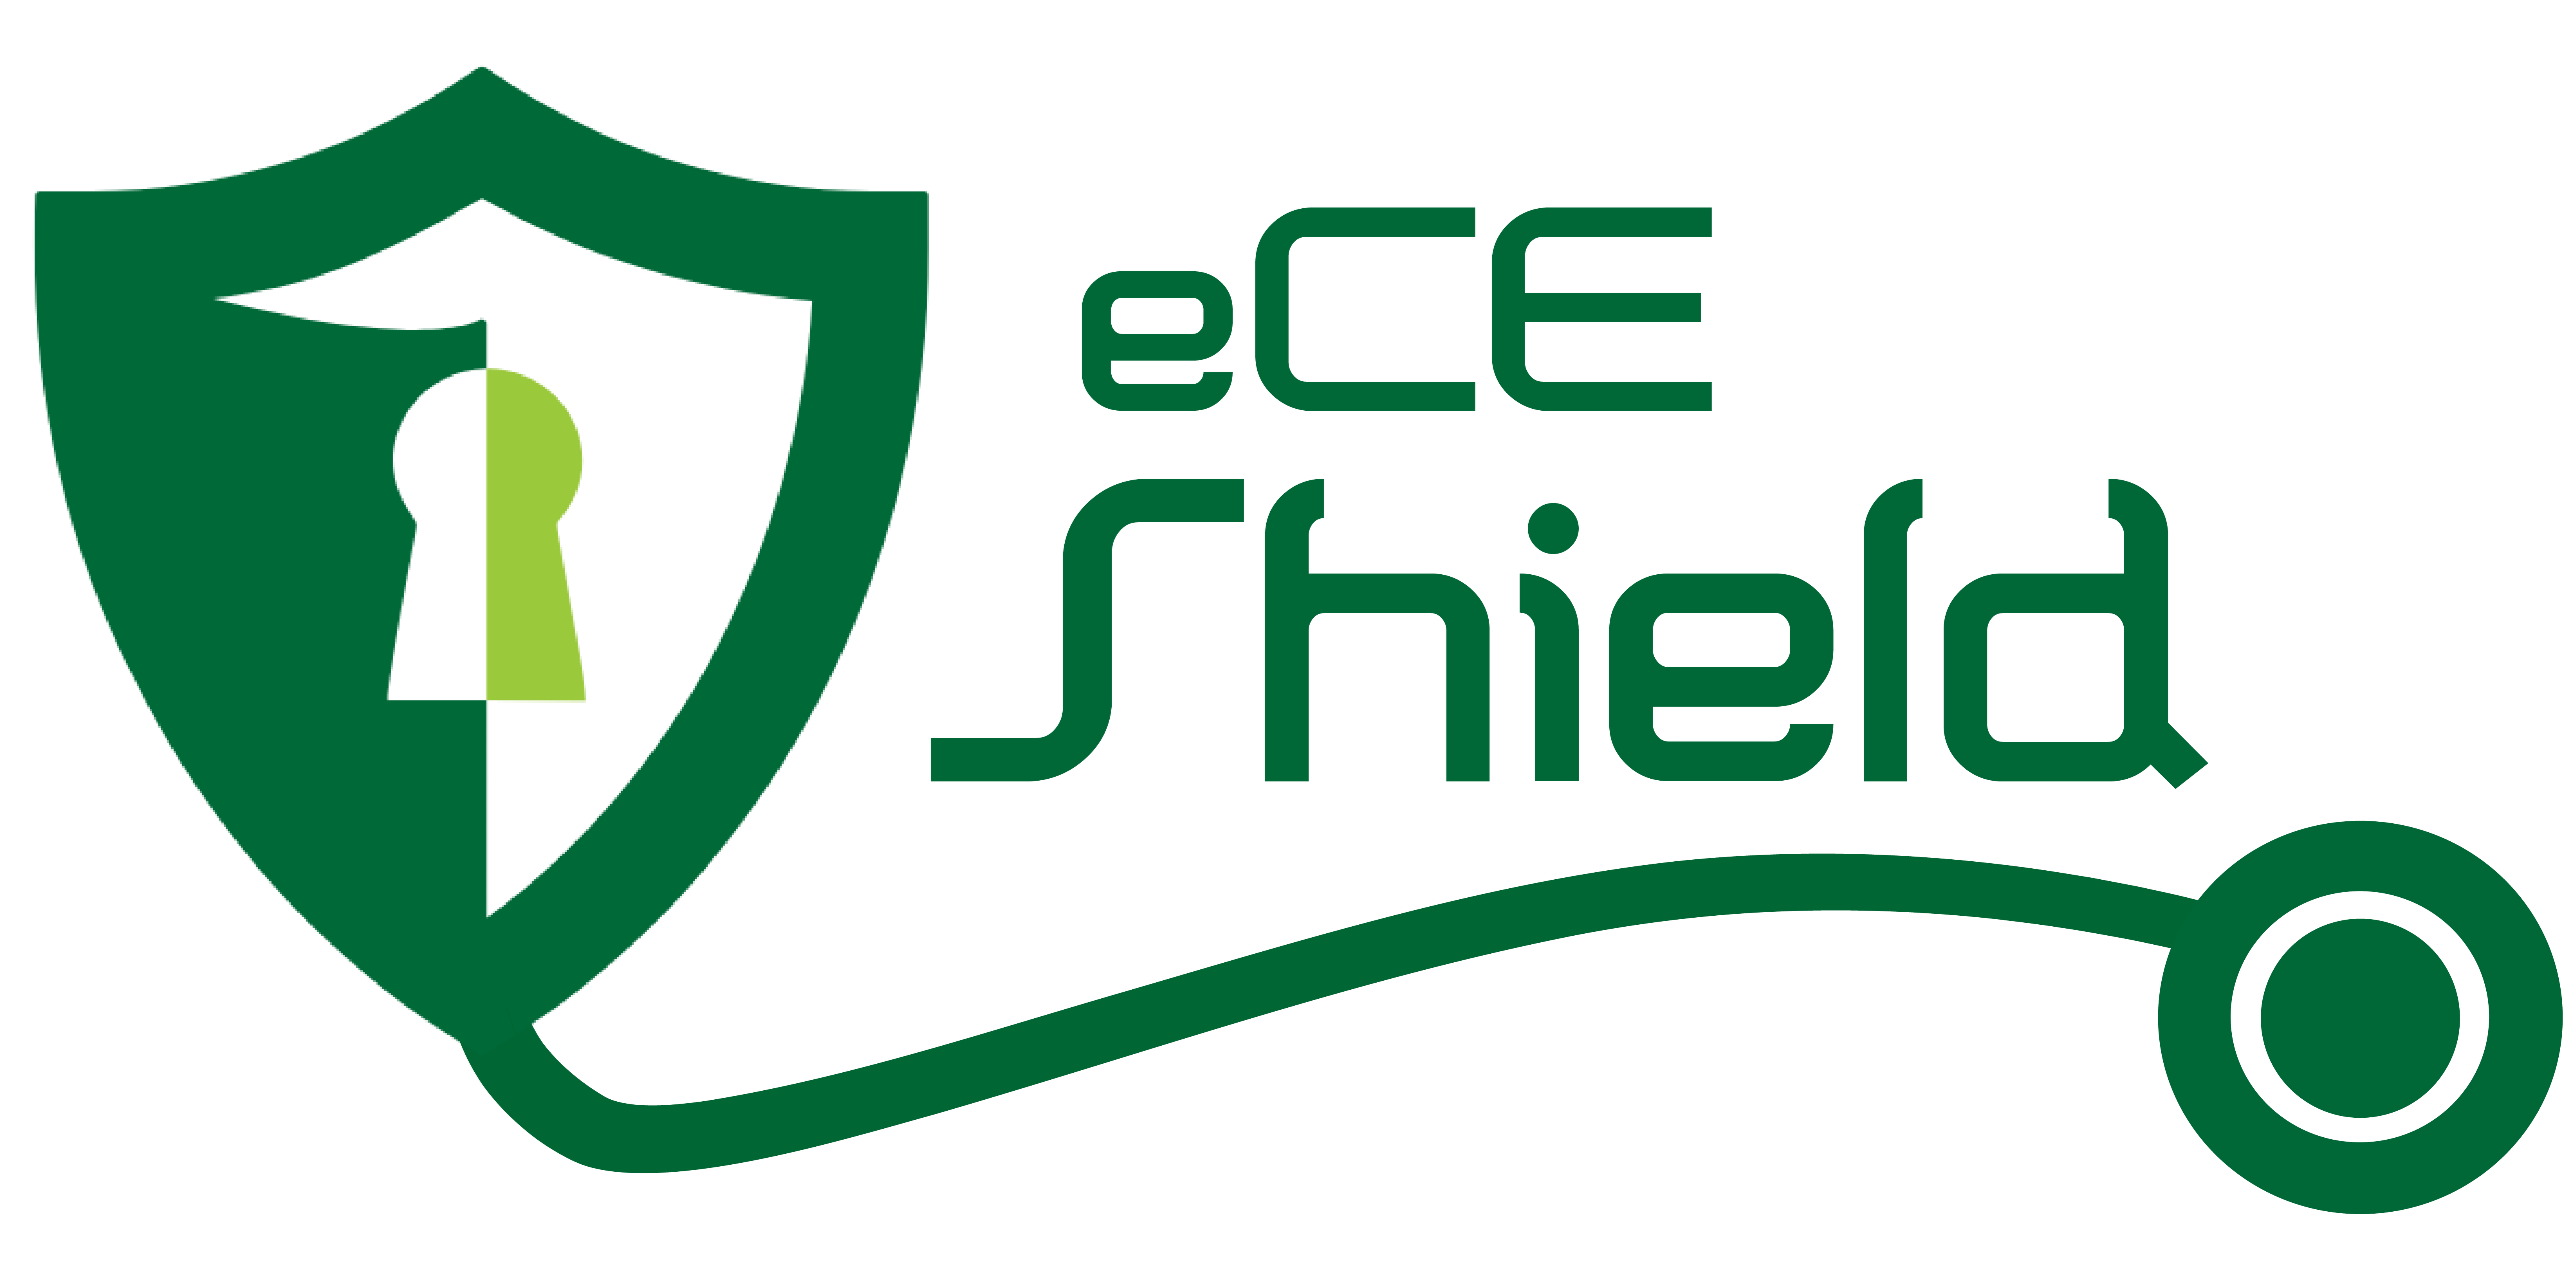 eCE Shield